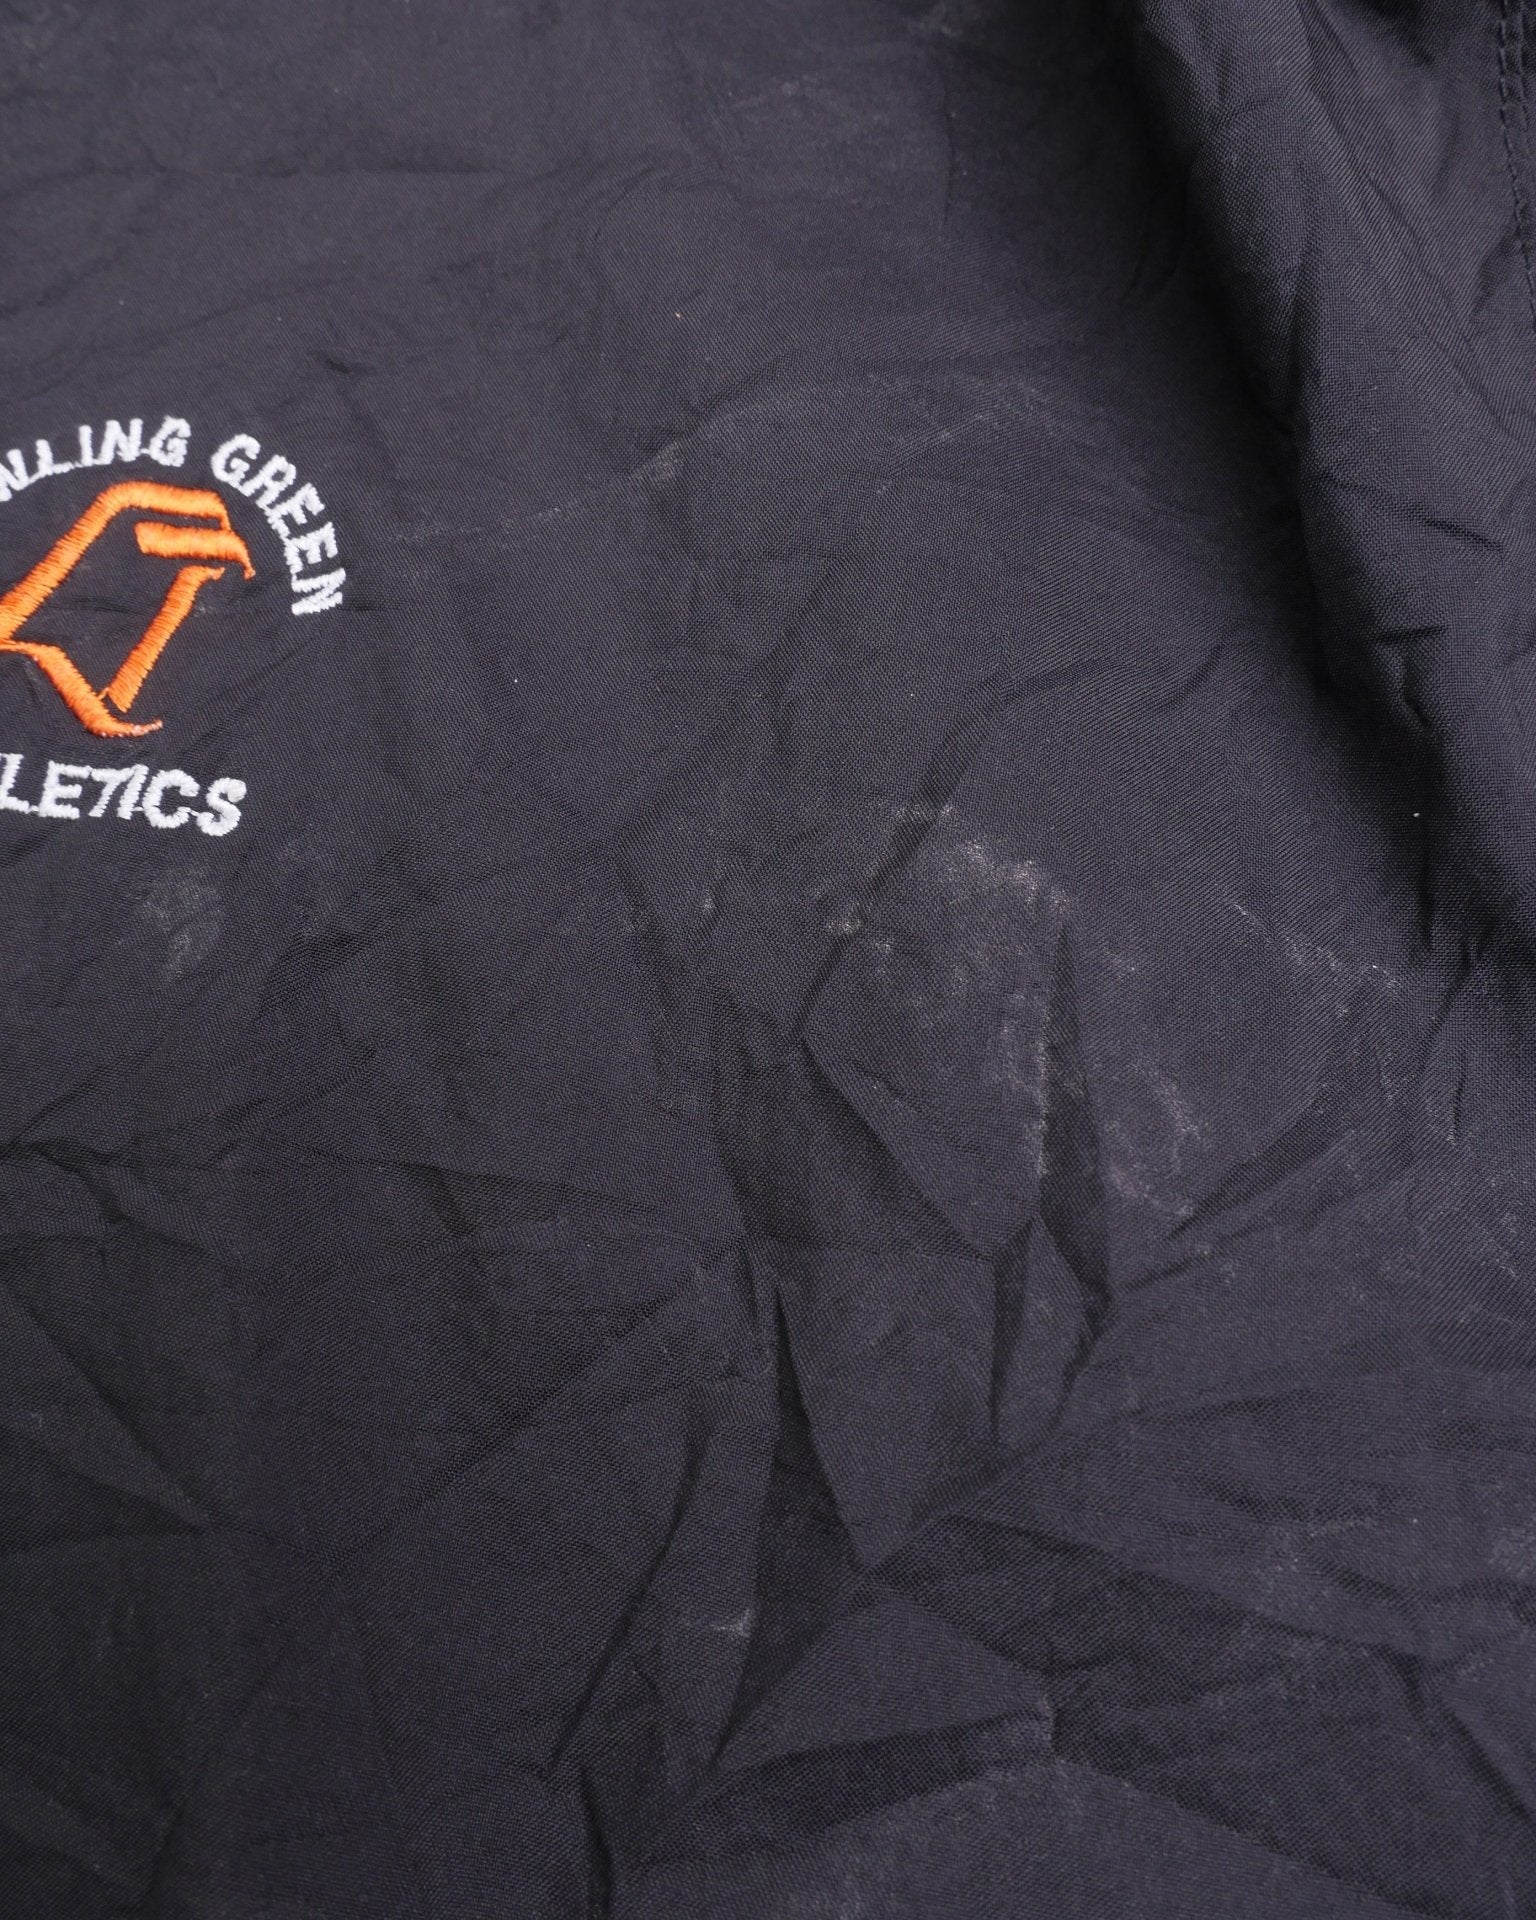 Adidas embroidered Logo black Vintage Track Jacke - Peeces